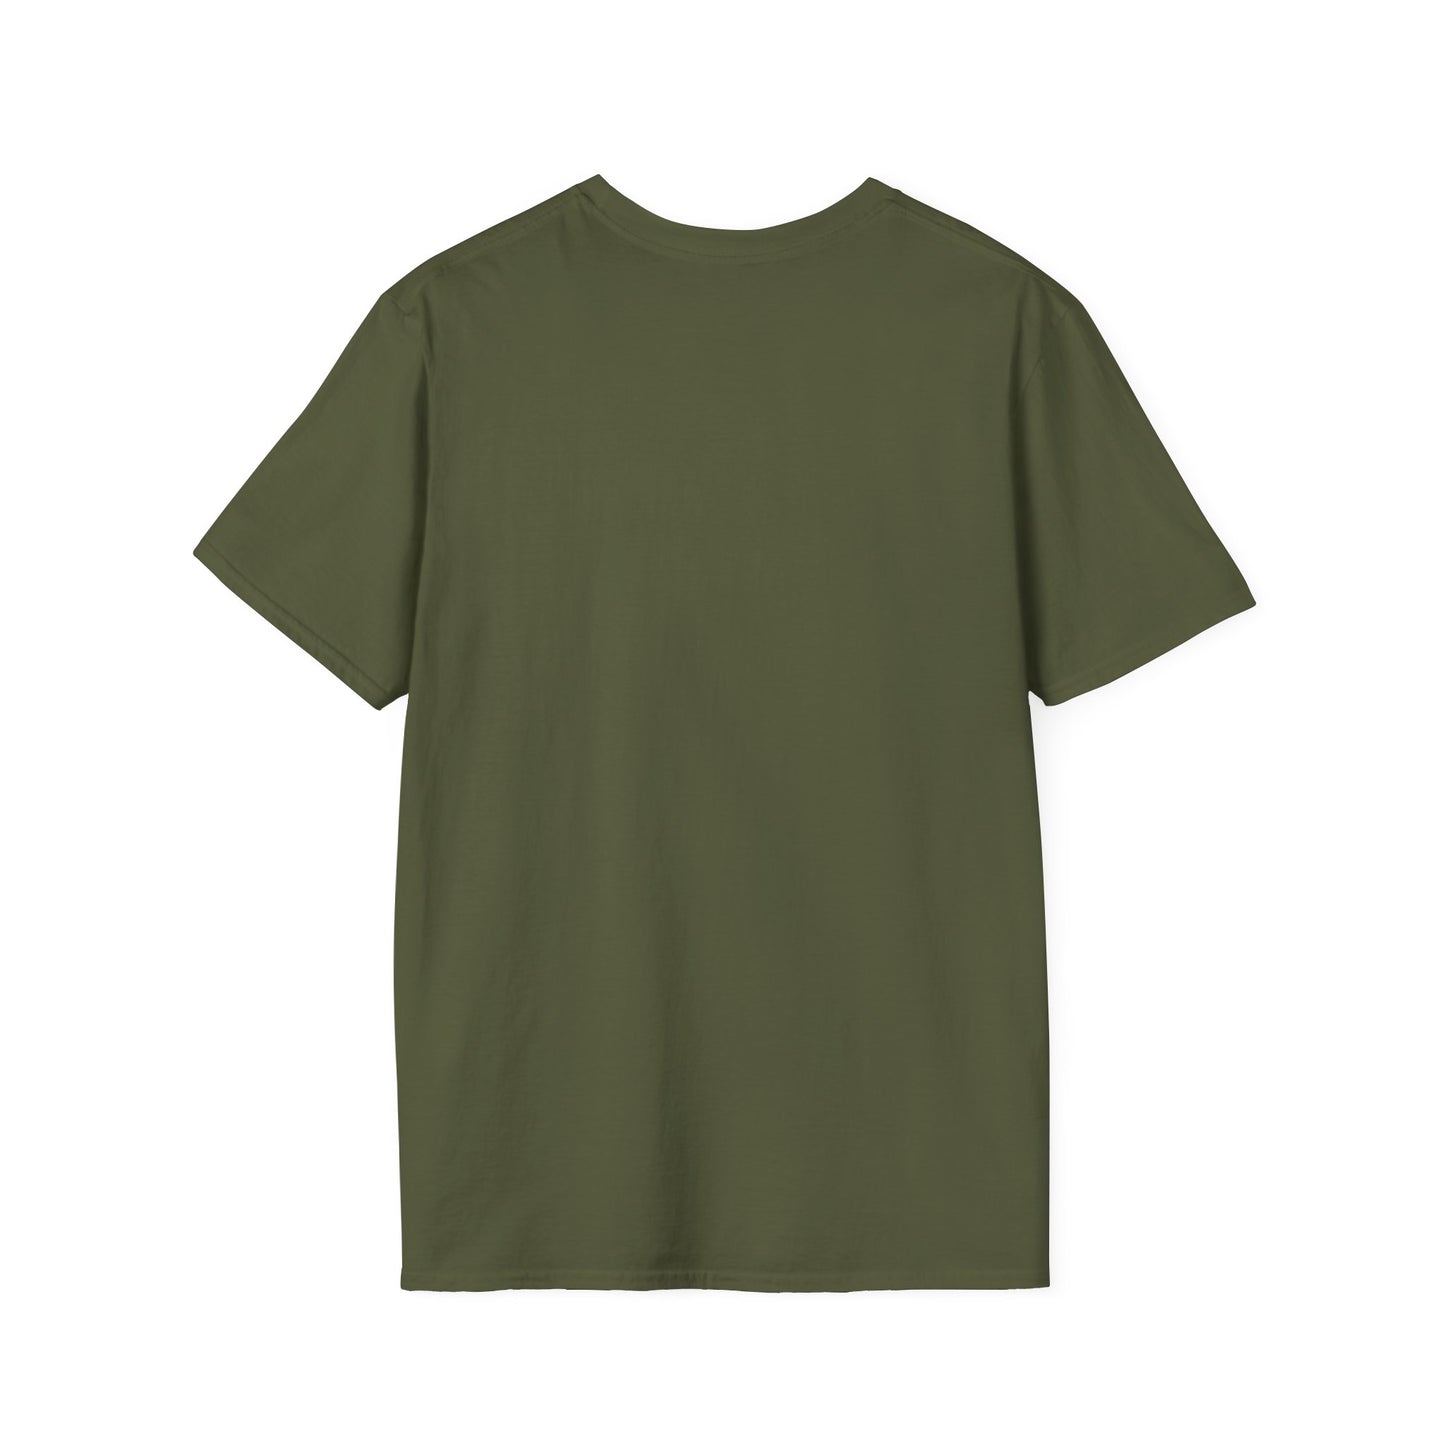 PODENGO NATION Unisex Softstyle T-Shirt